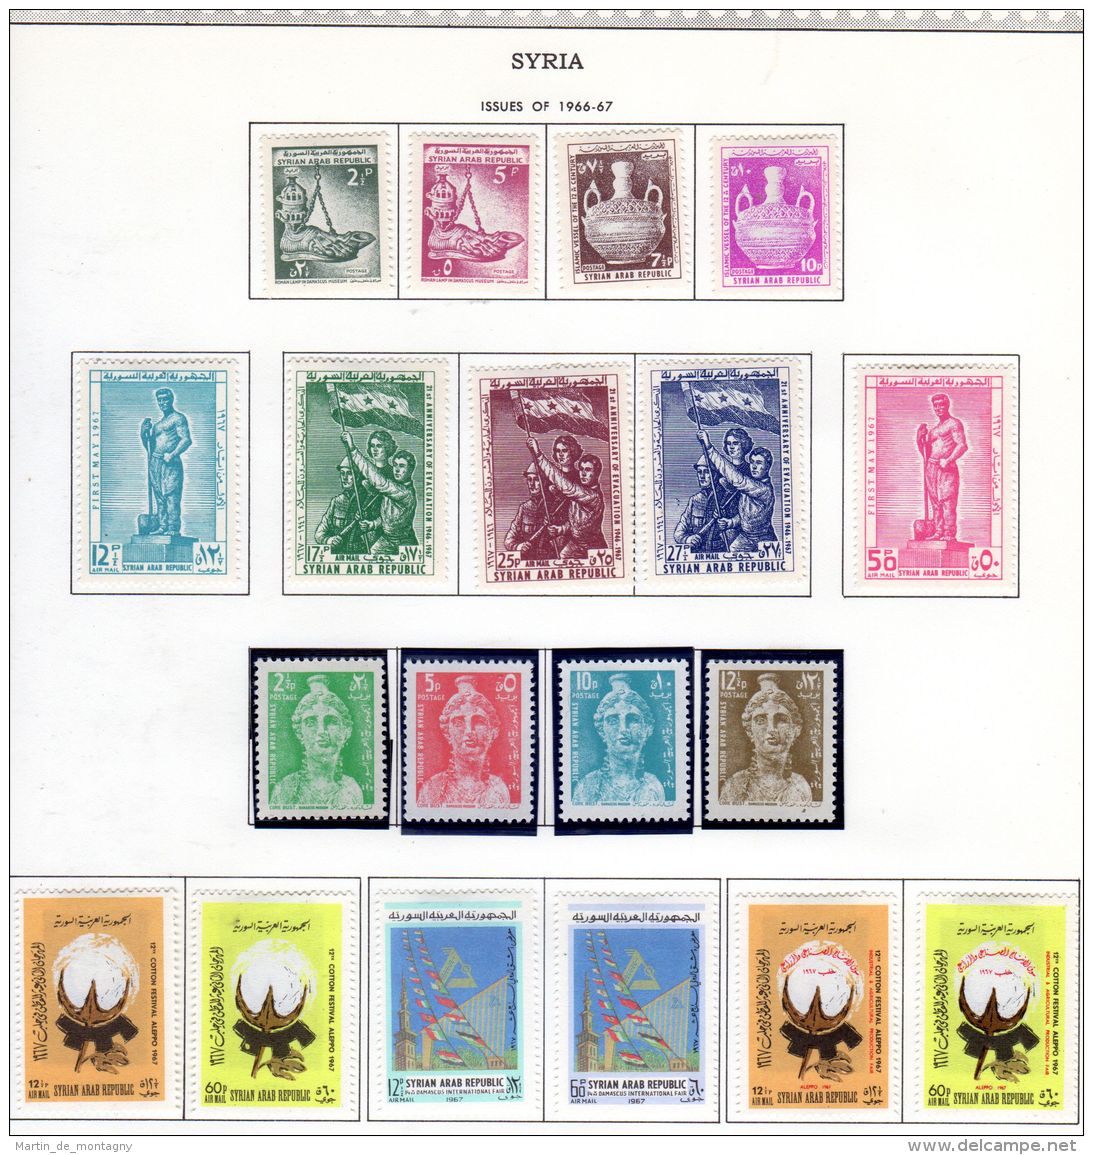 Kleine Sammlung SYRIEN; von 1961 - 1971, neu mit Falz, postfrisch, gestempelt, gem. Scan, Los 49830